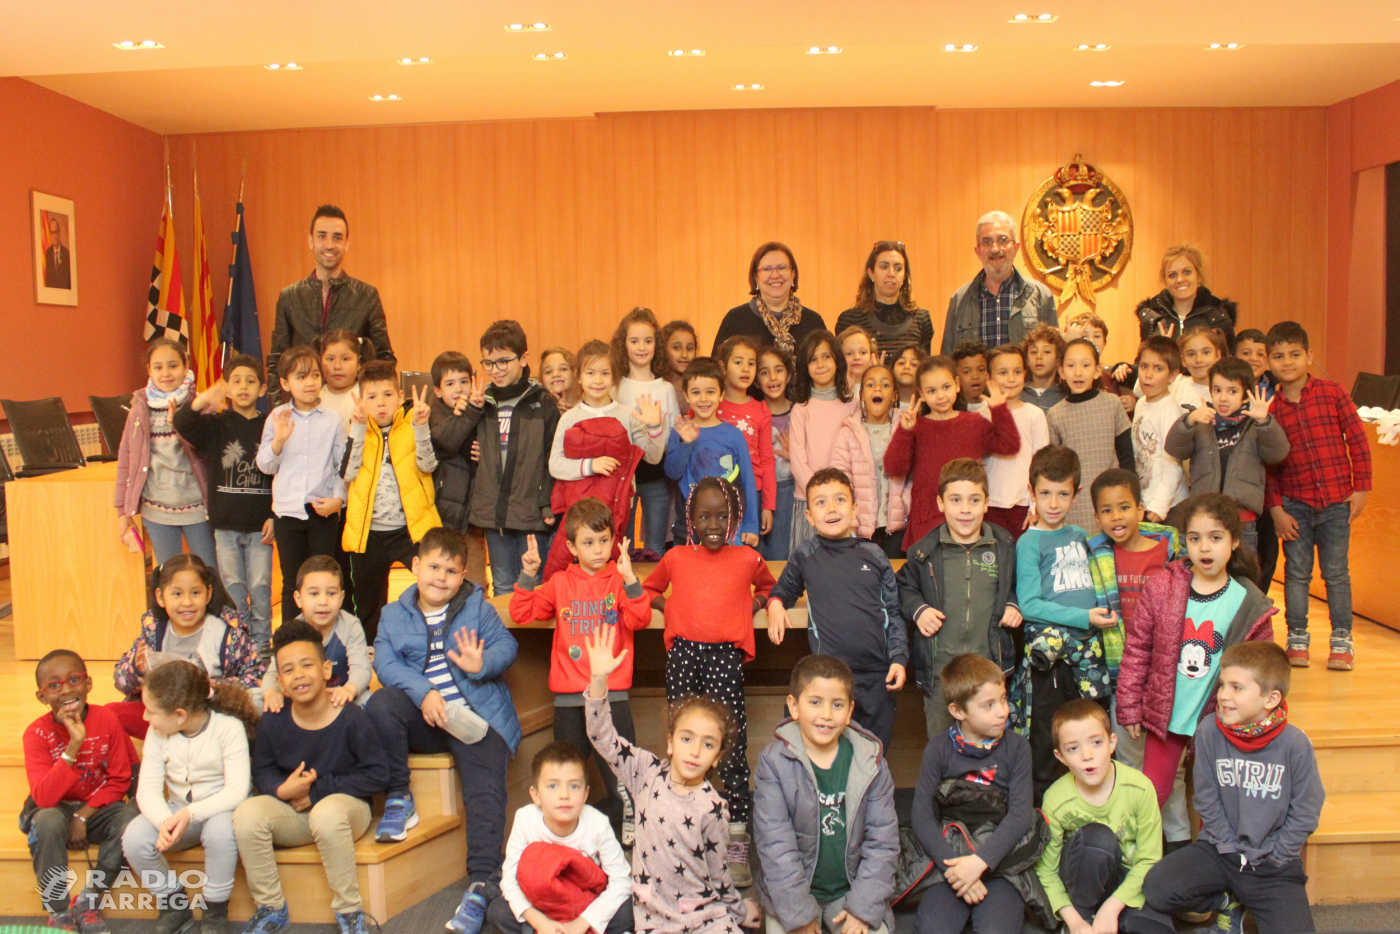 L’Ajuntament de Tàrrega rep la visita d’alumnes del Col·legi Sant Josep - Vedruna de la ciutat